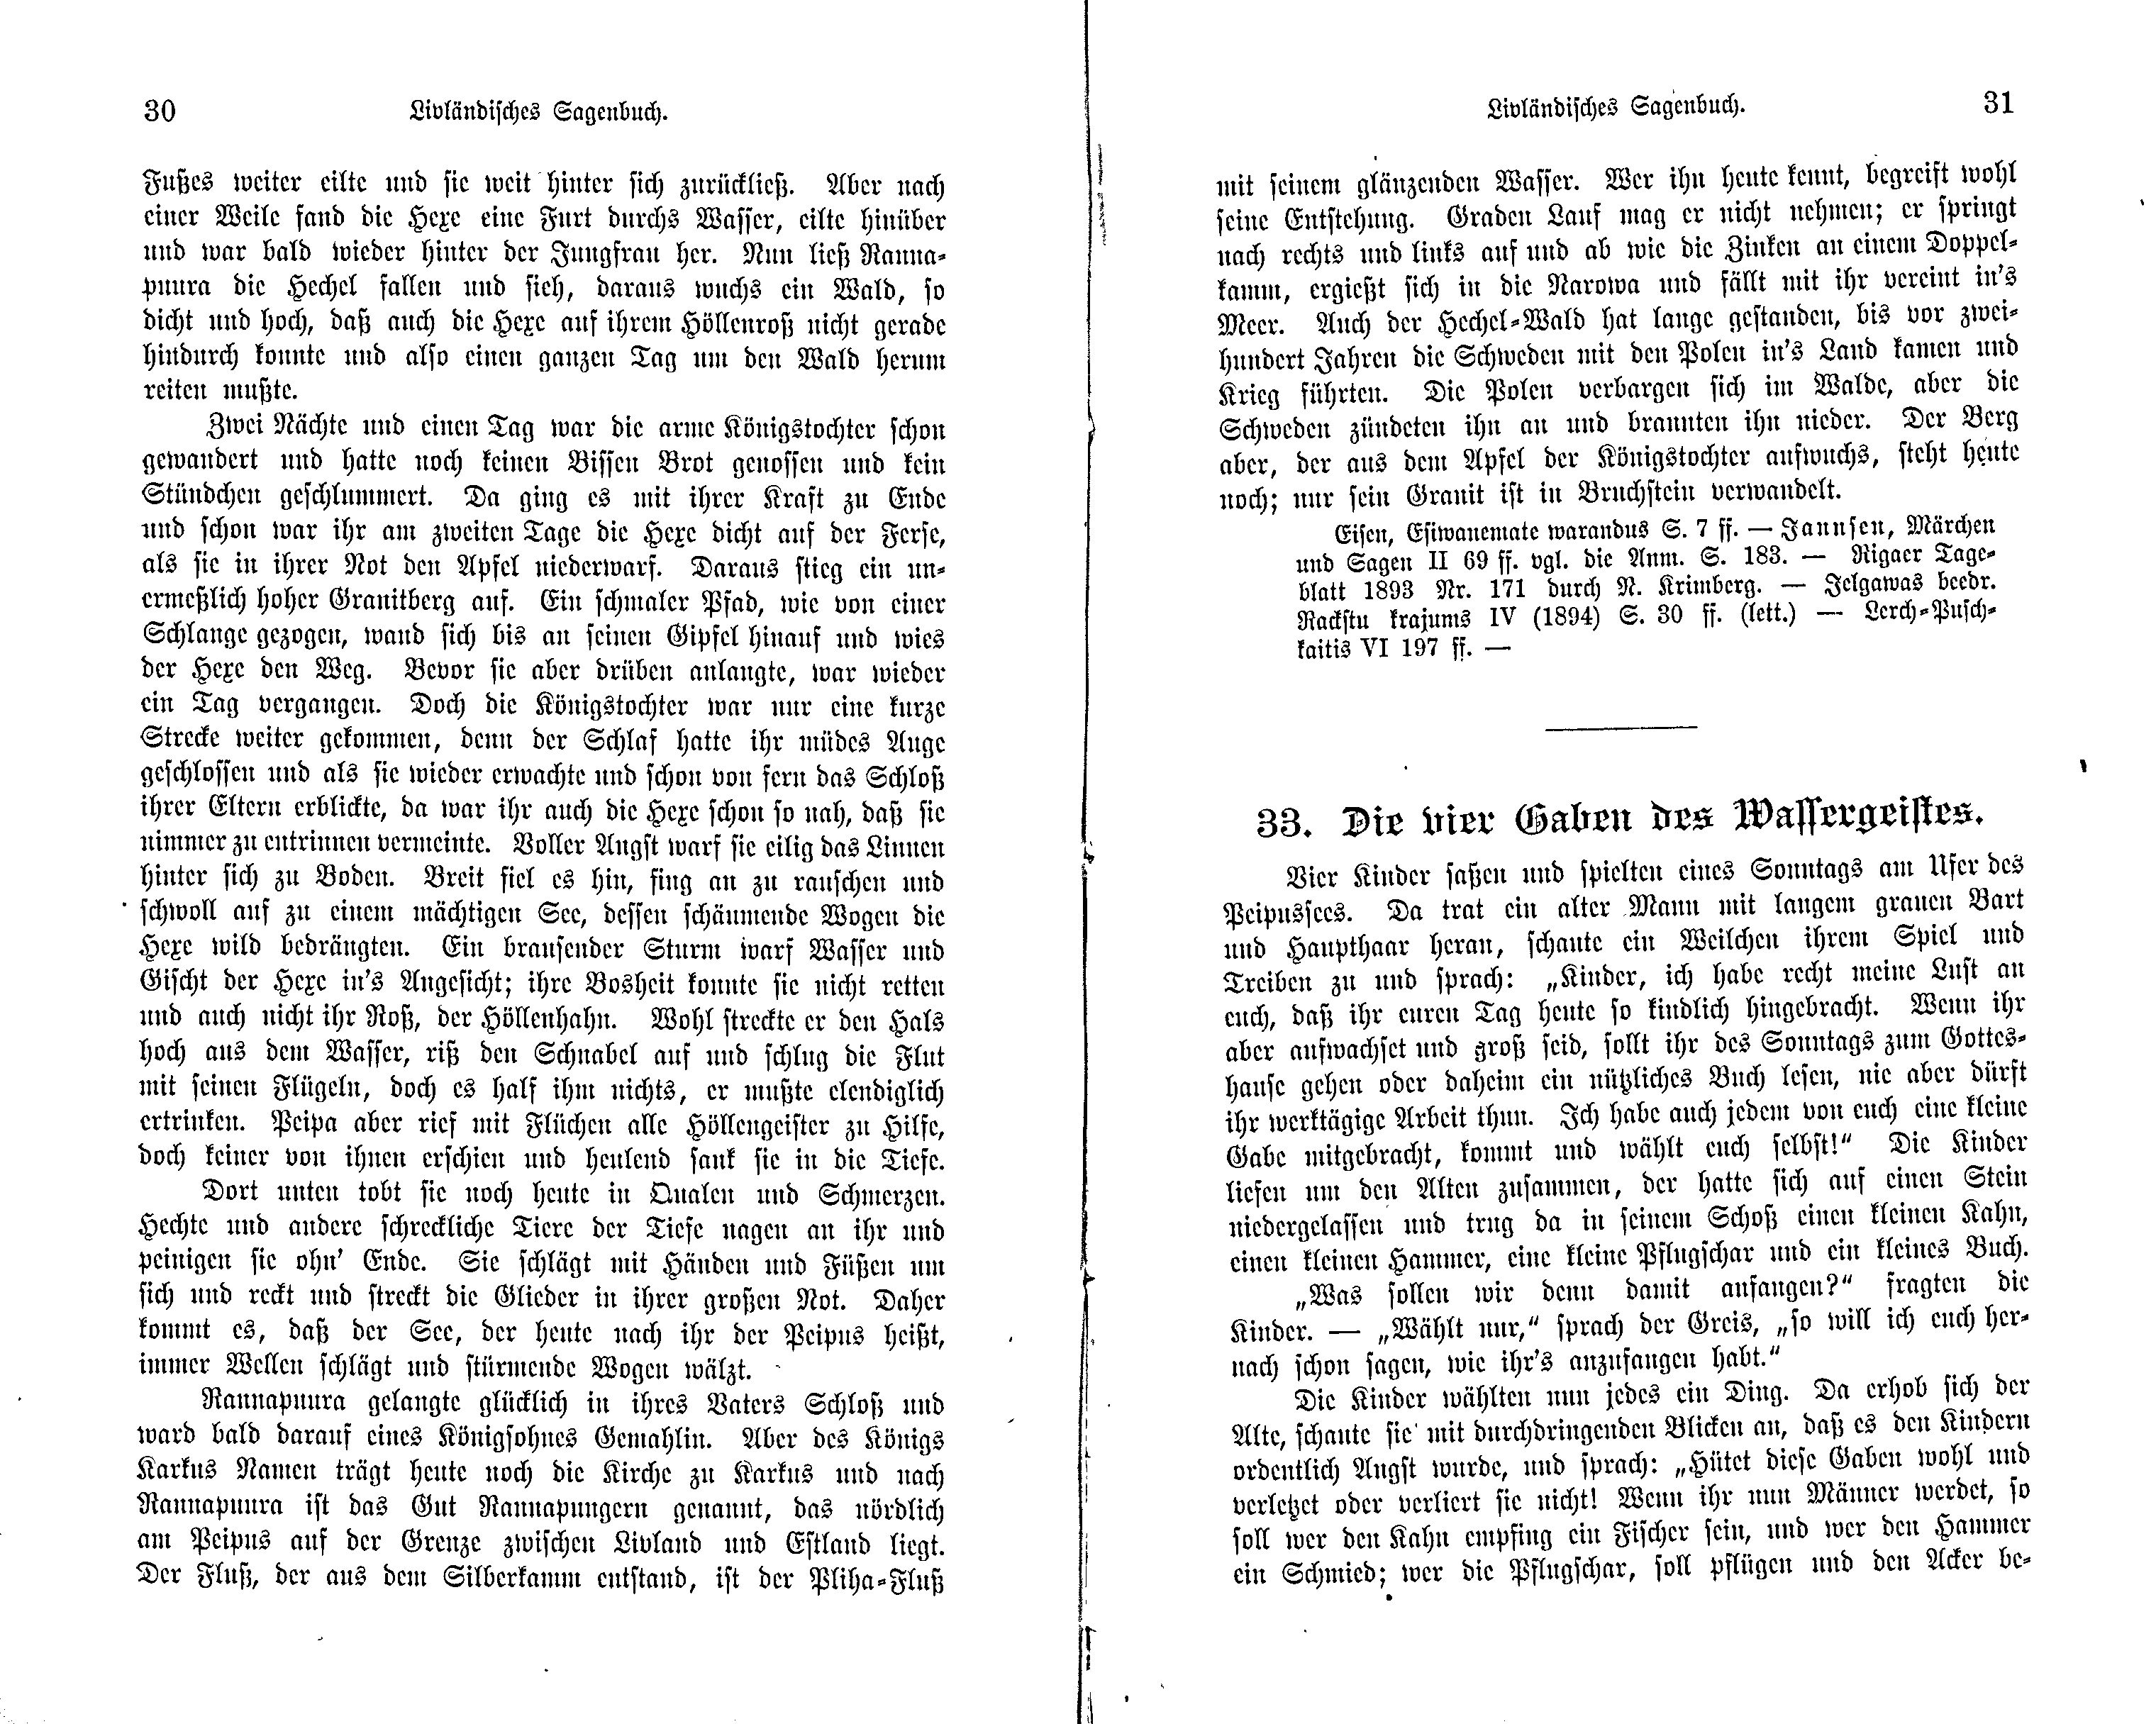 Livländisches Sagenbuch (1897) | 27. (30-31) Haupttext